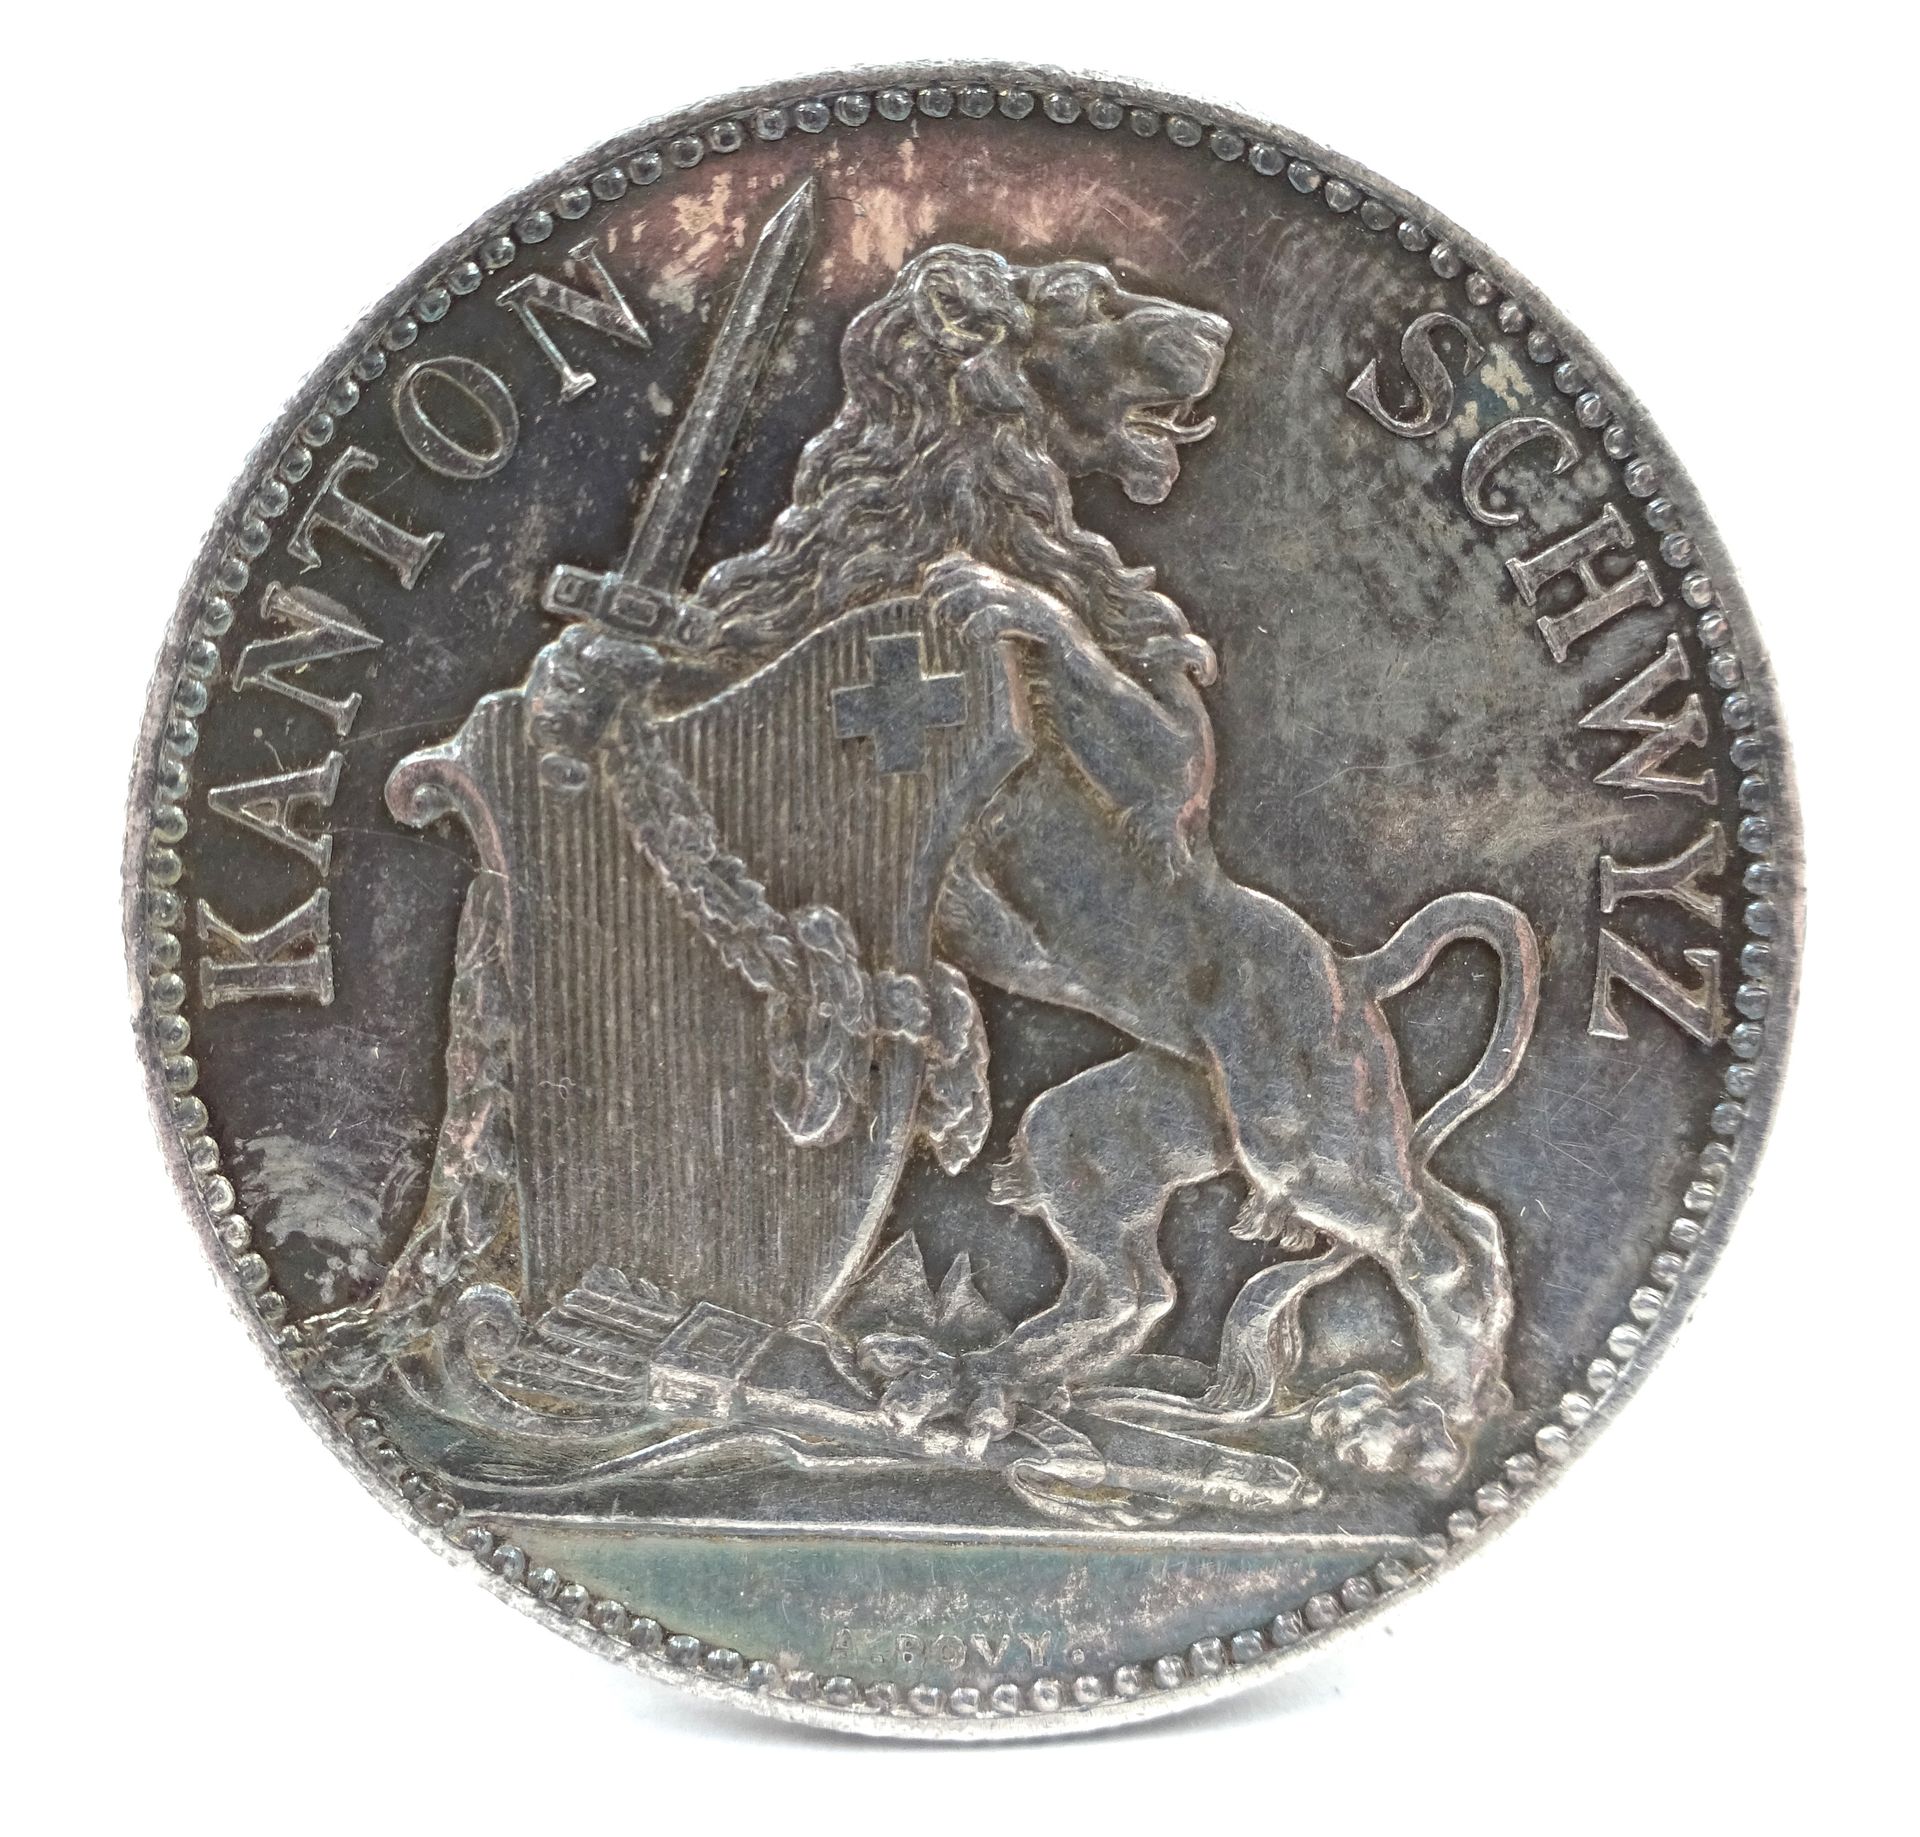 Null Pièce de 5 francs suisses en argent, Schwyz, 1867. 25,02 g net.